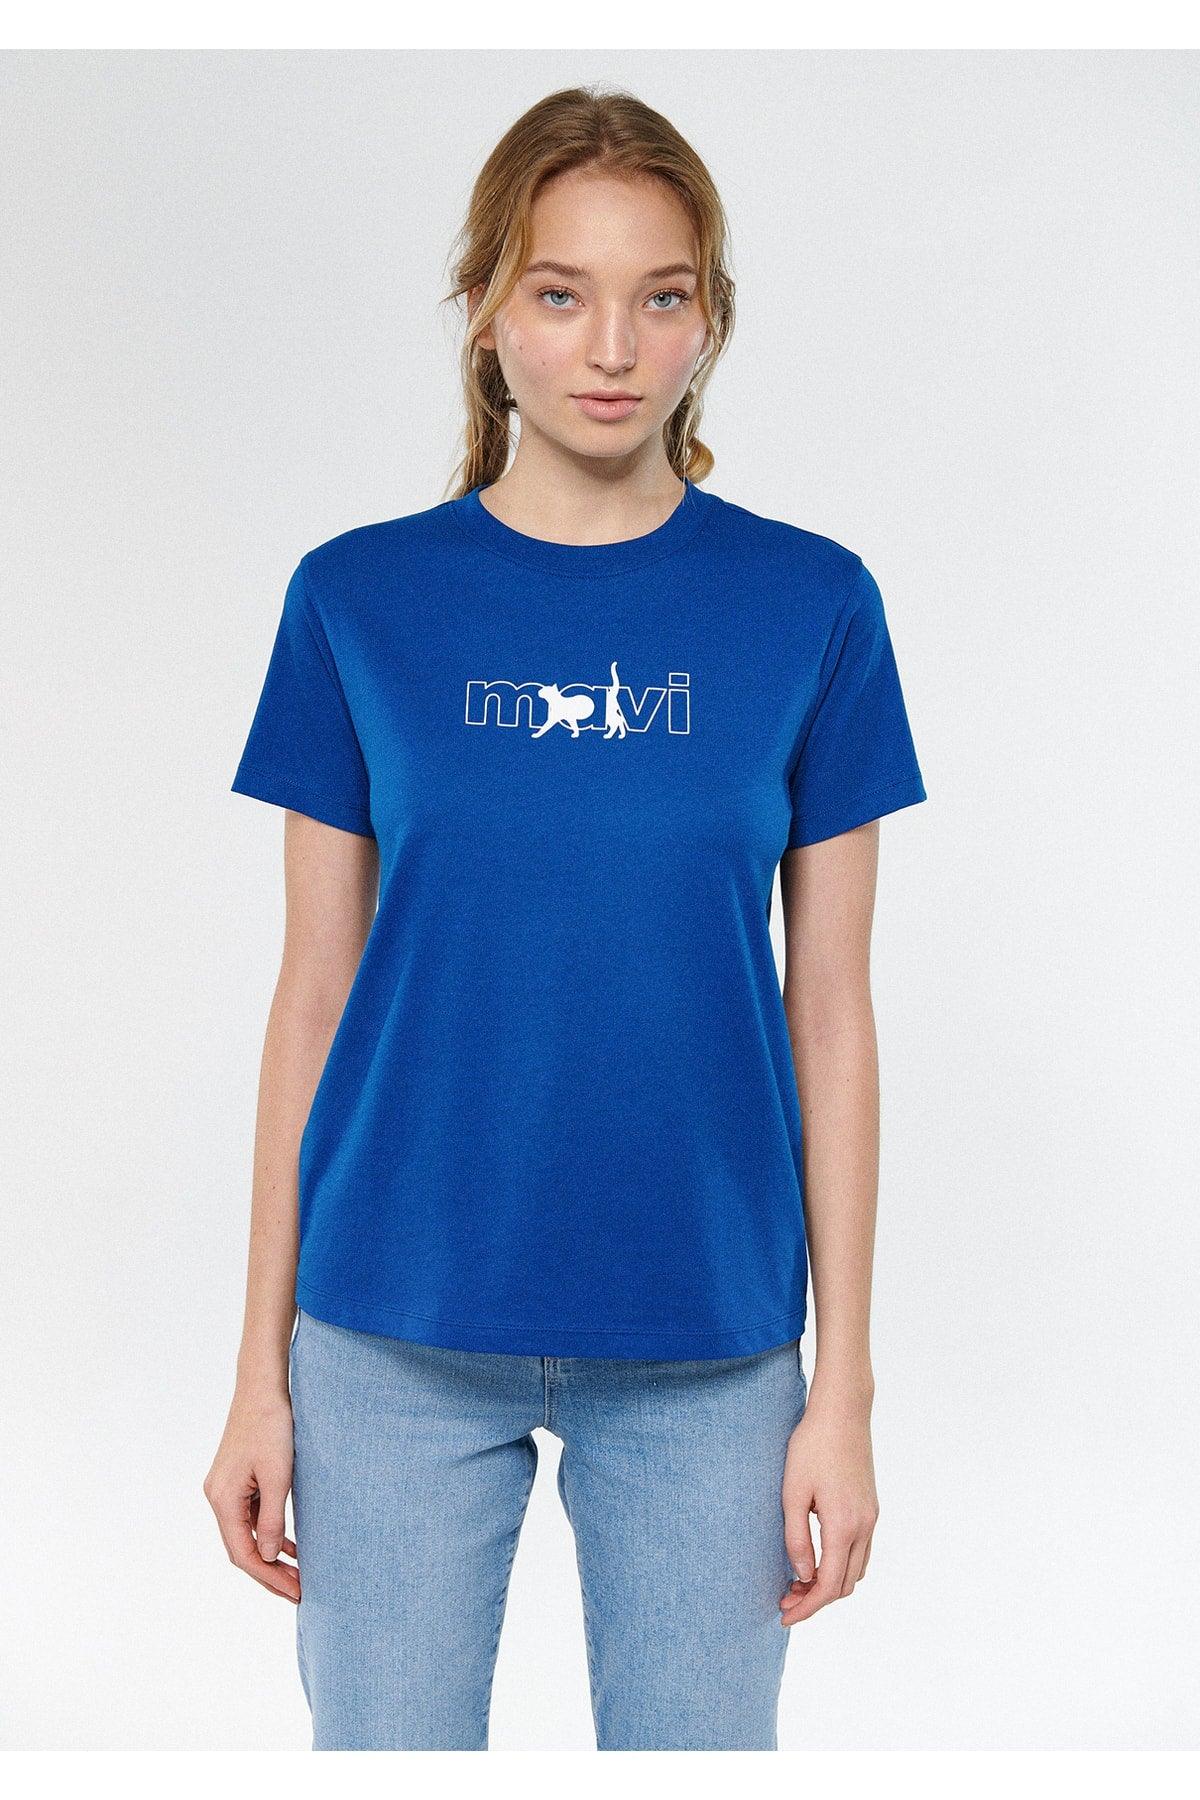 Cat Logo Printed T-Shirt Regular Fit / Regular Fit 1611478-32213 - Swordslife